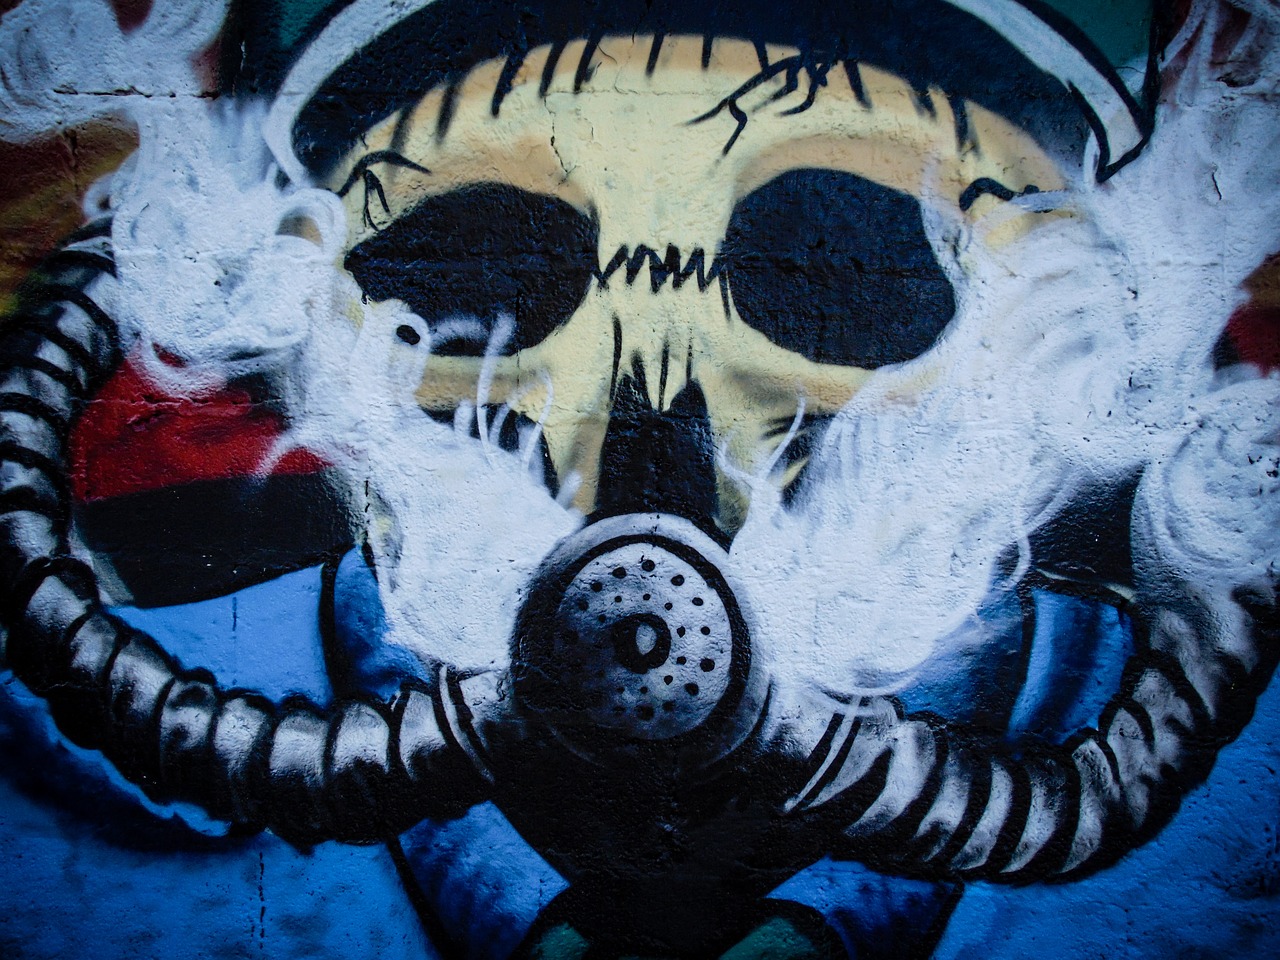 graffiti wall painting free photo